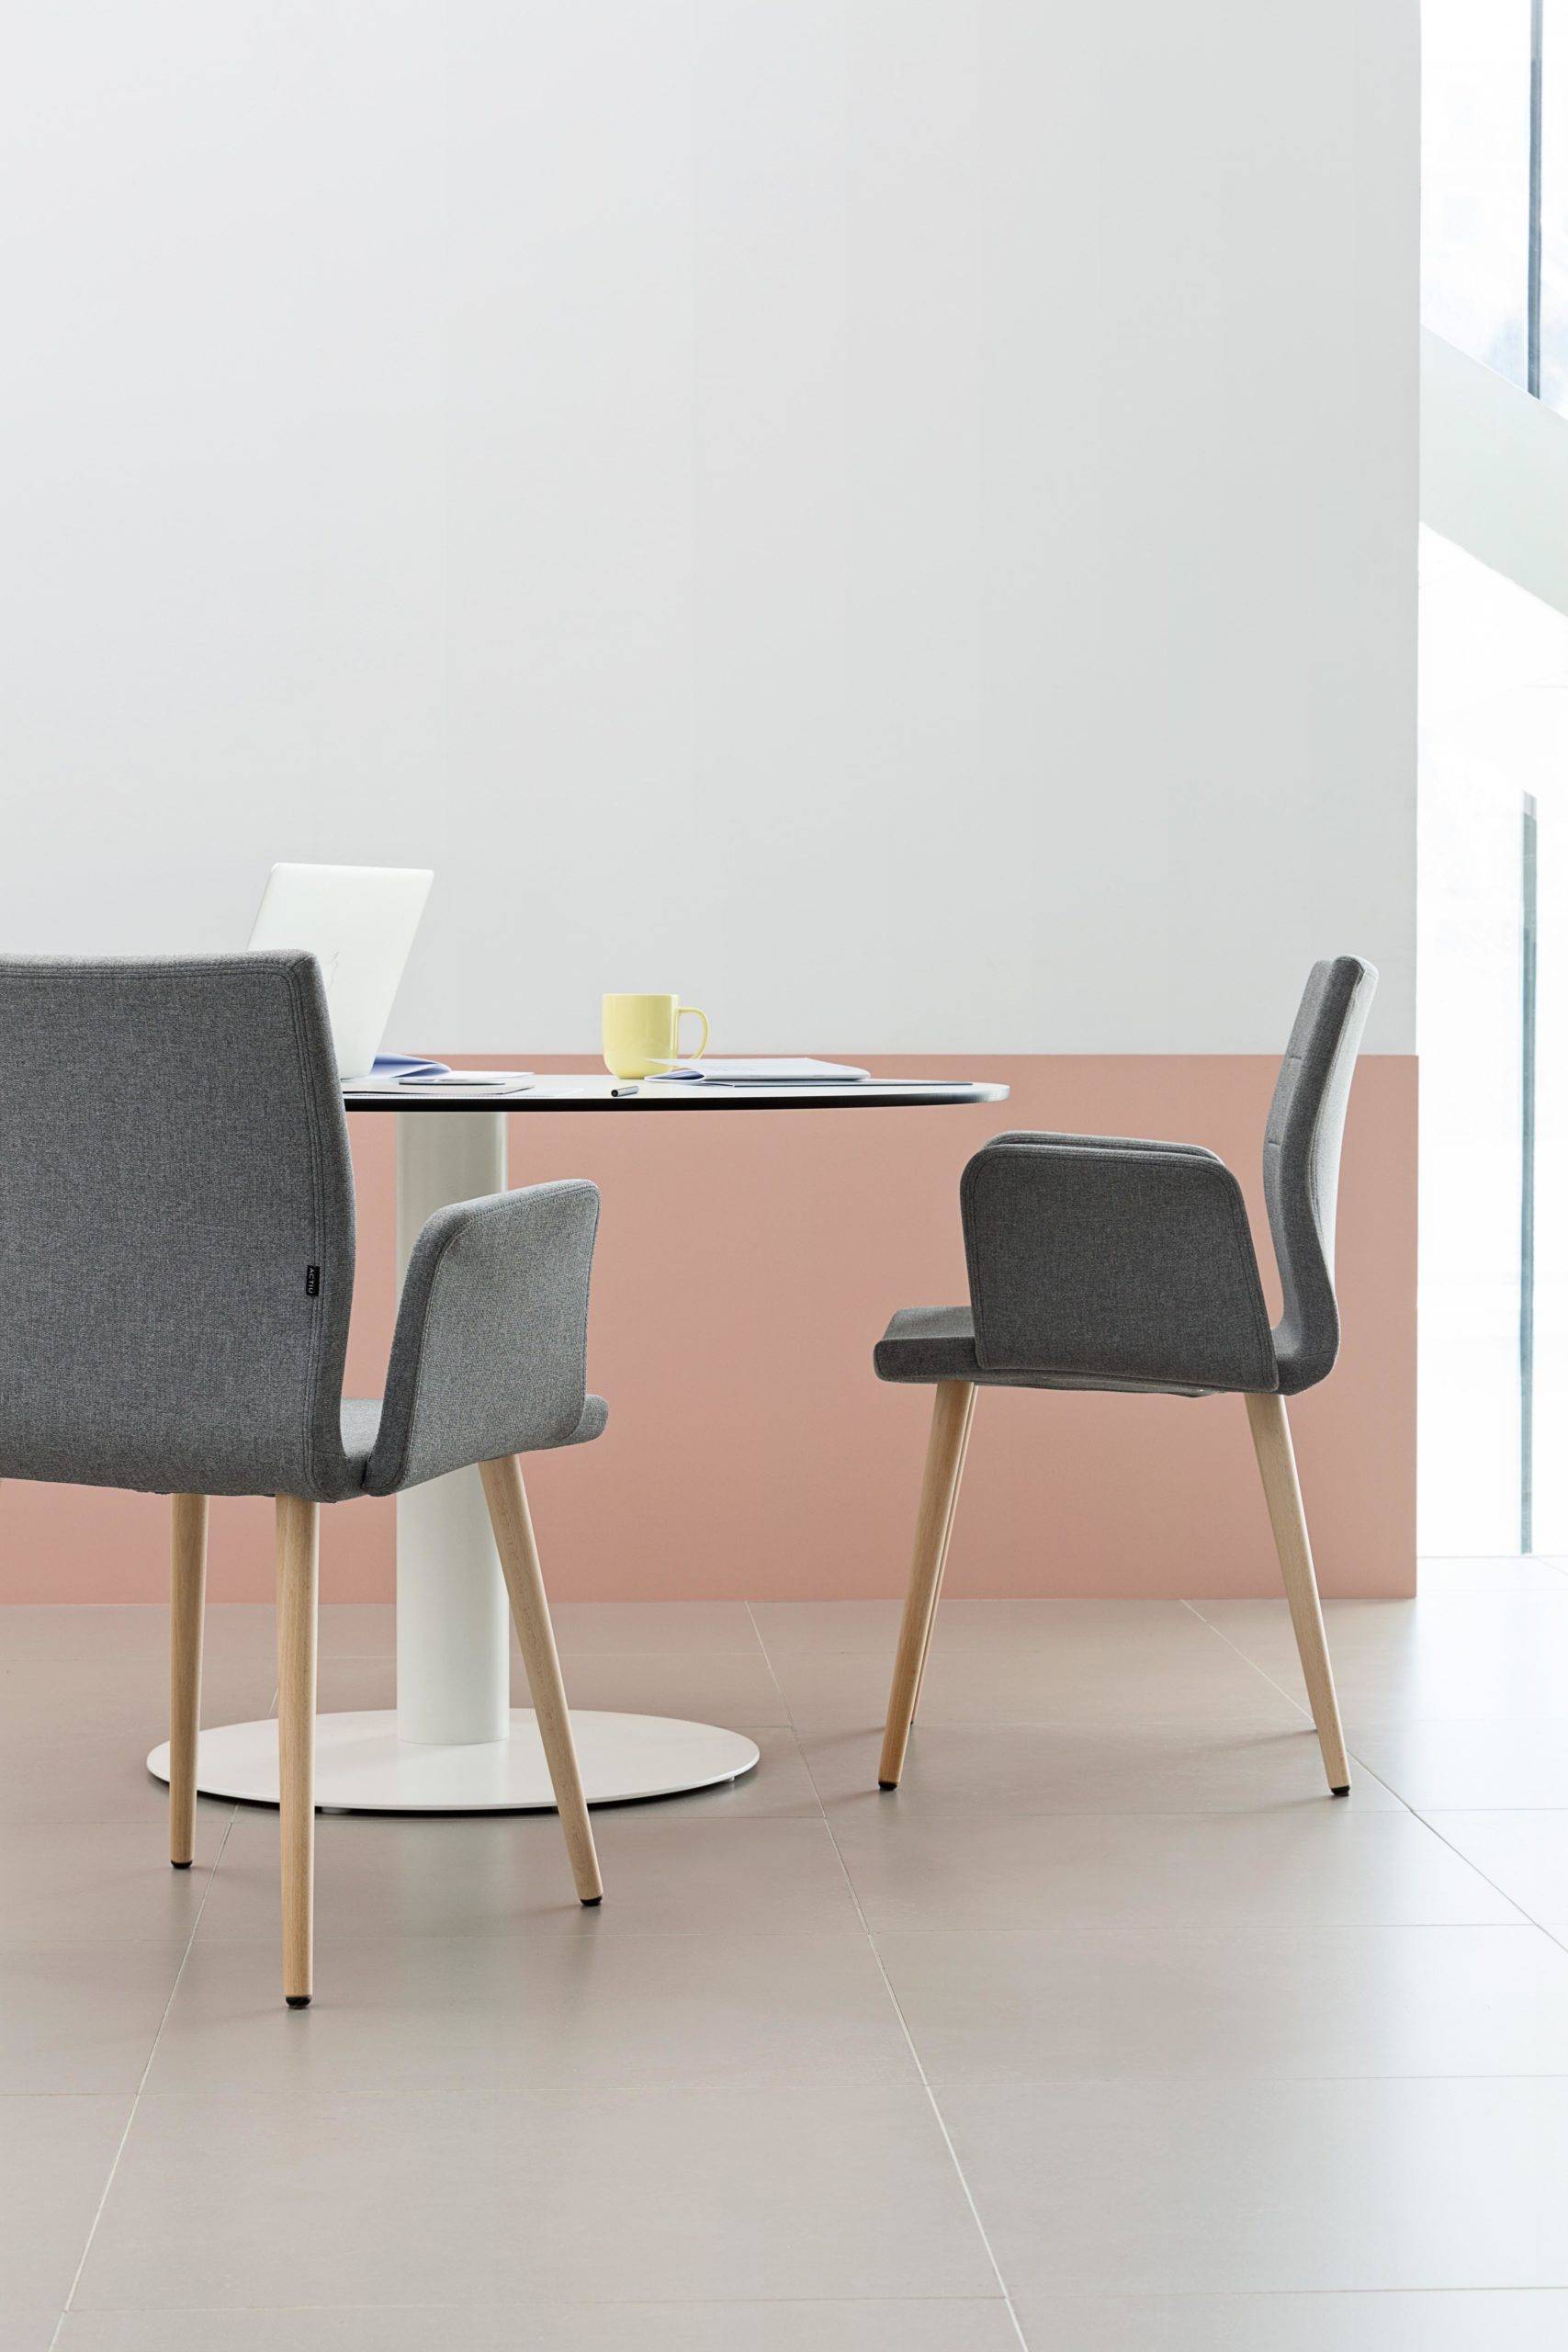 Silla Uma silla de colectividades mobiliario de oficina Impacto Diseño Valencia